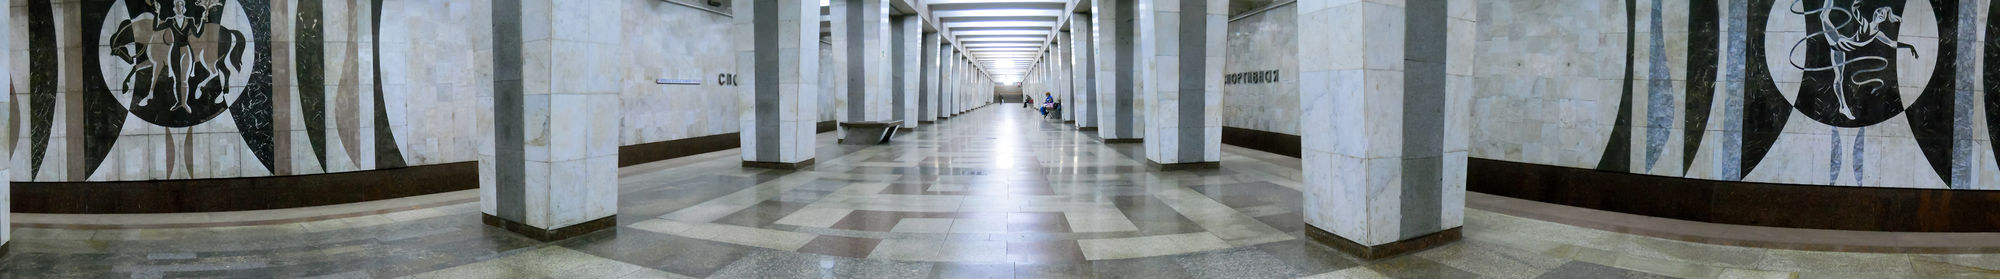 Panorama stanice metra